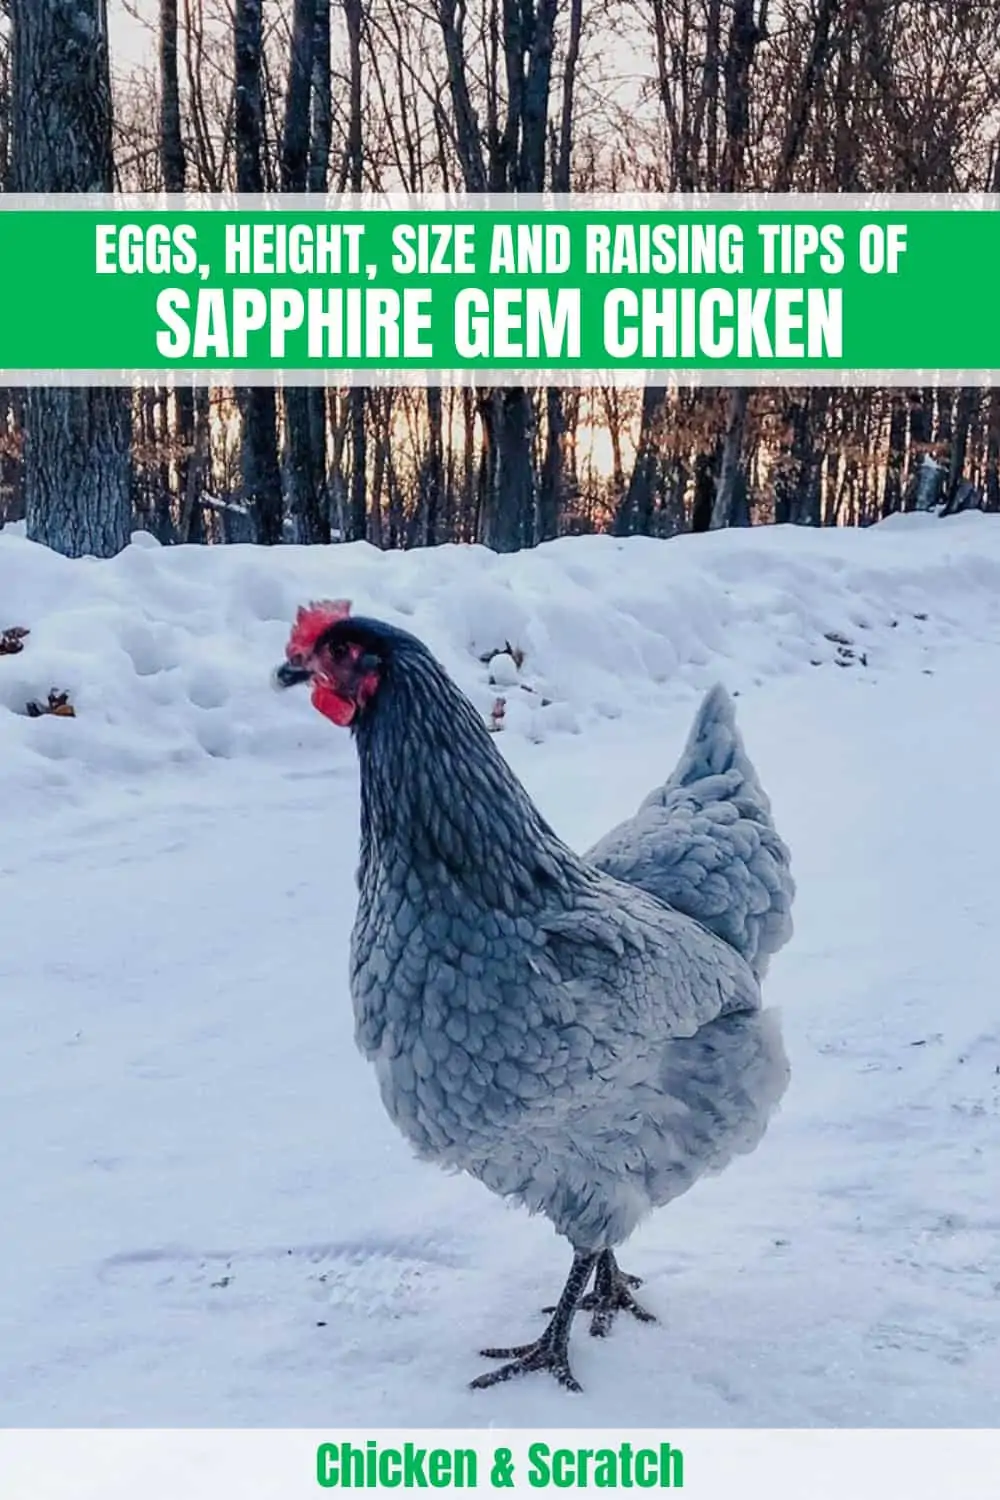 Sapphire Gem Chicken guide